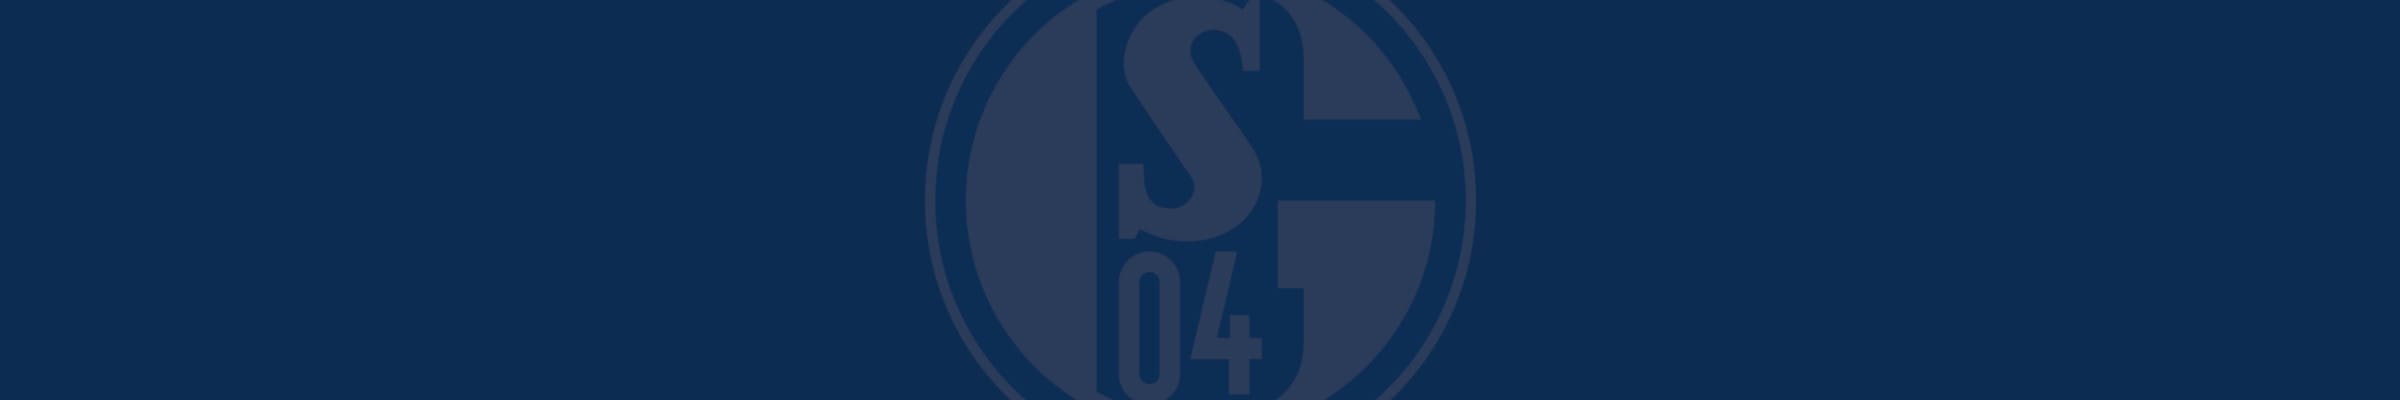 Schalke Logo Banner